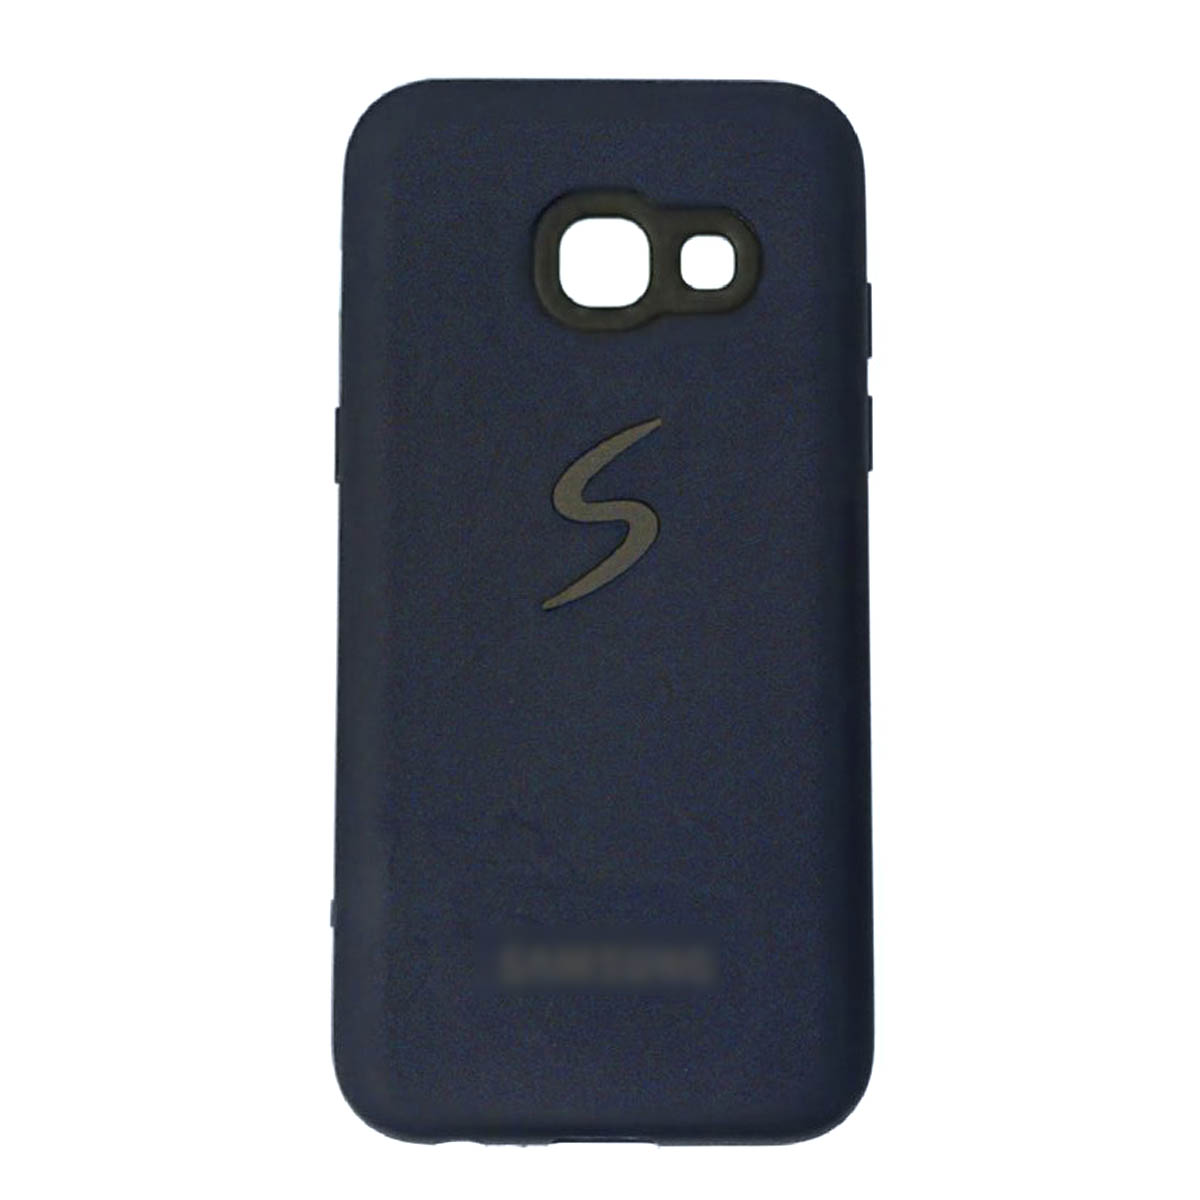 Чехол накладка для SAMSUNG Galaxy A3 2017 (SM-A320), силикон, матовый, с логотипом, цвет синий